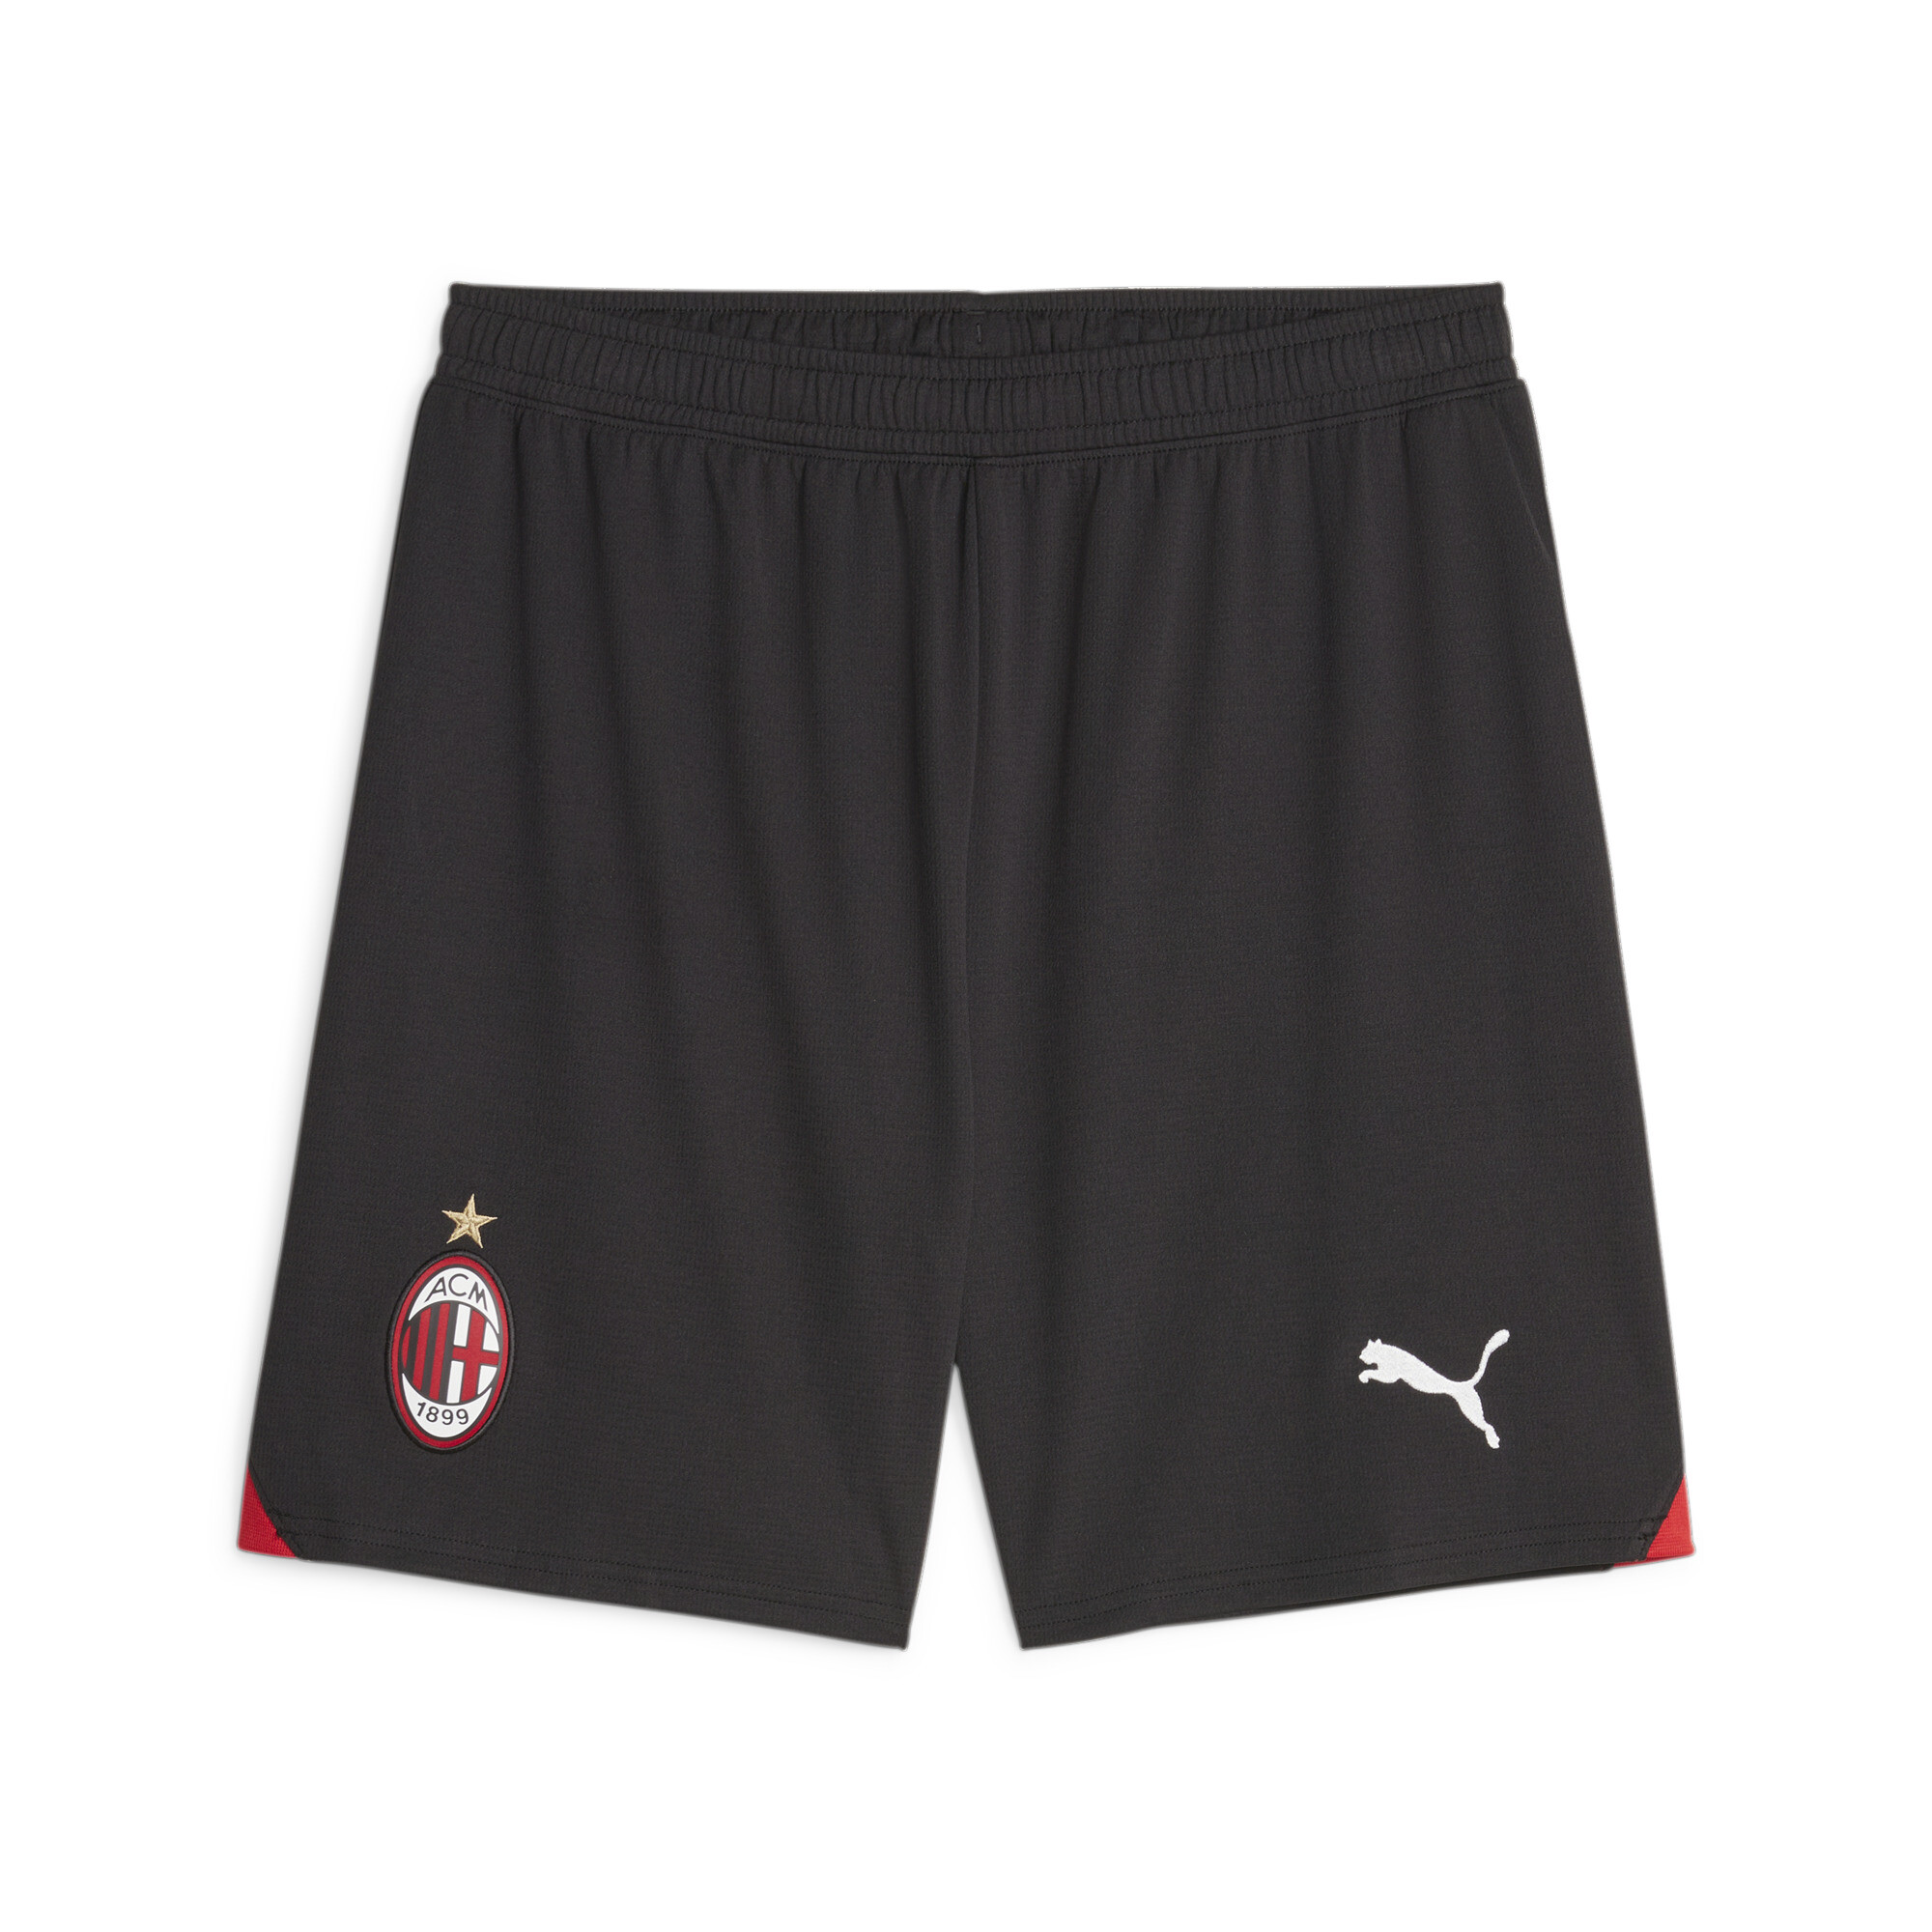 Men's PUMA AC Milan Football Shorts In Black, Size Large